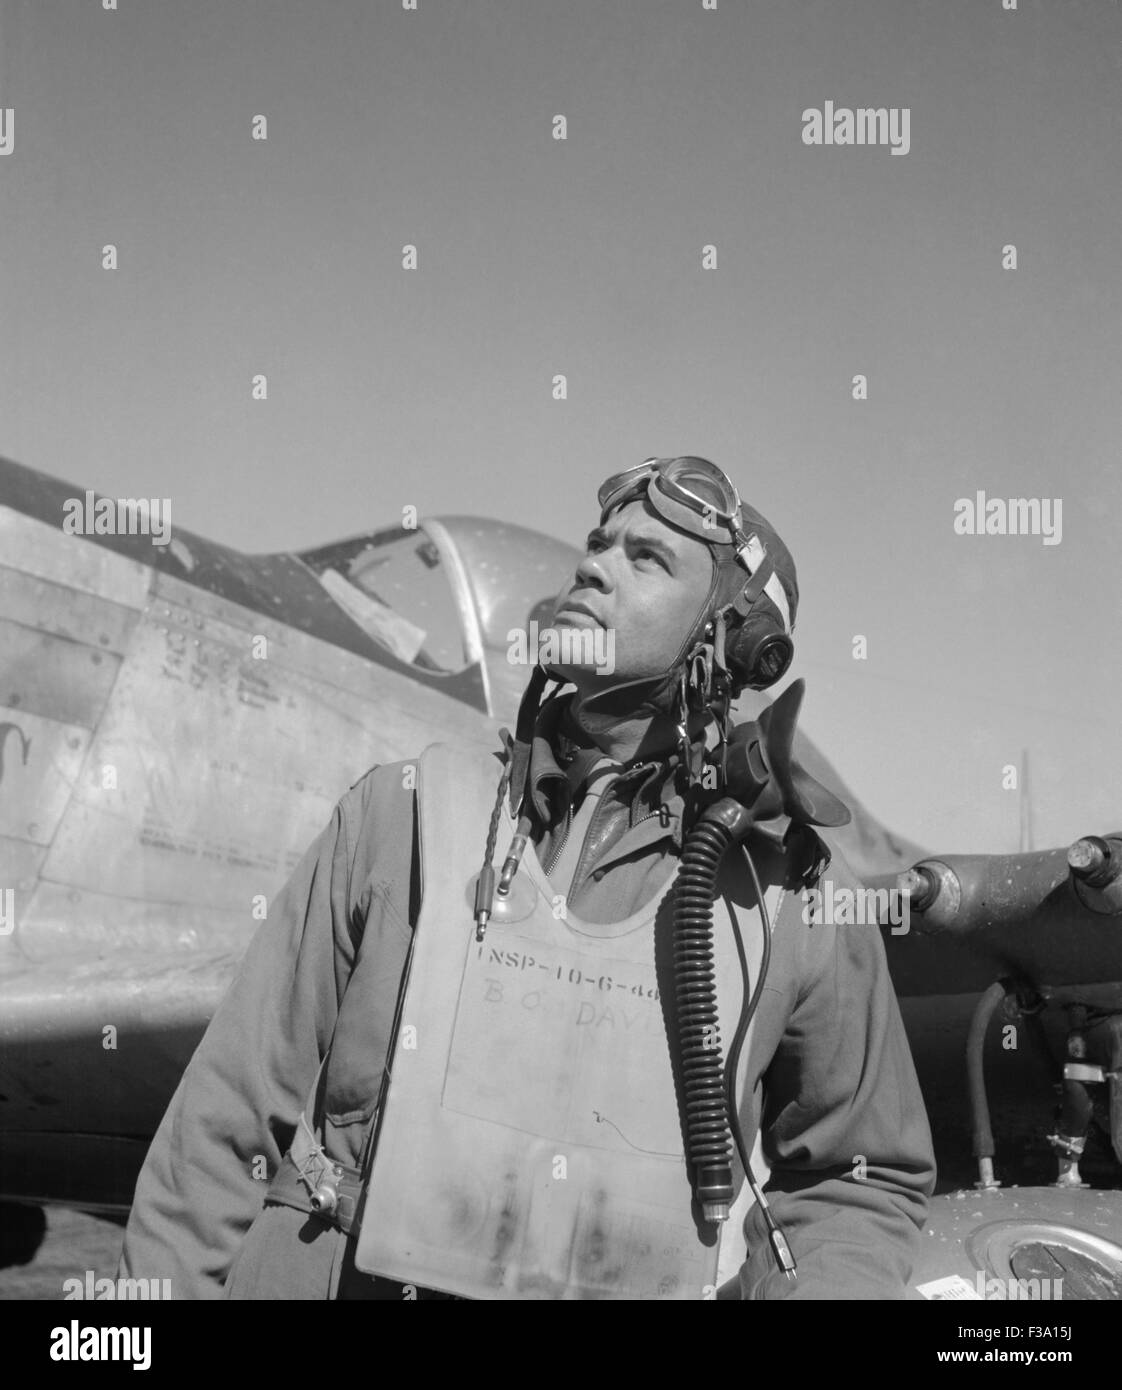 El General Benjamin O. Davis, Jr., comandante de la Tuskegee Airmen durante la Segunda Guerra Mundial y el primer afroamericano en general Foto de stock